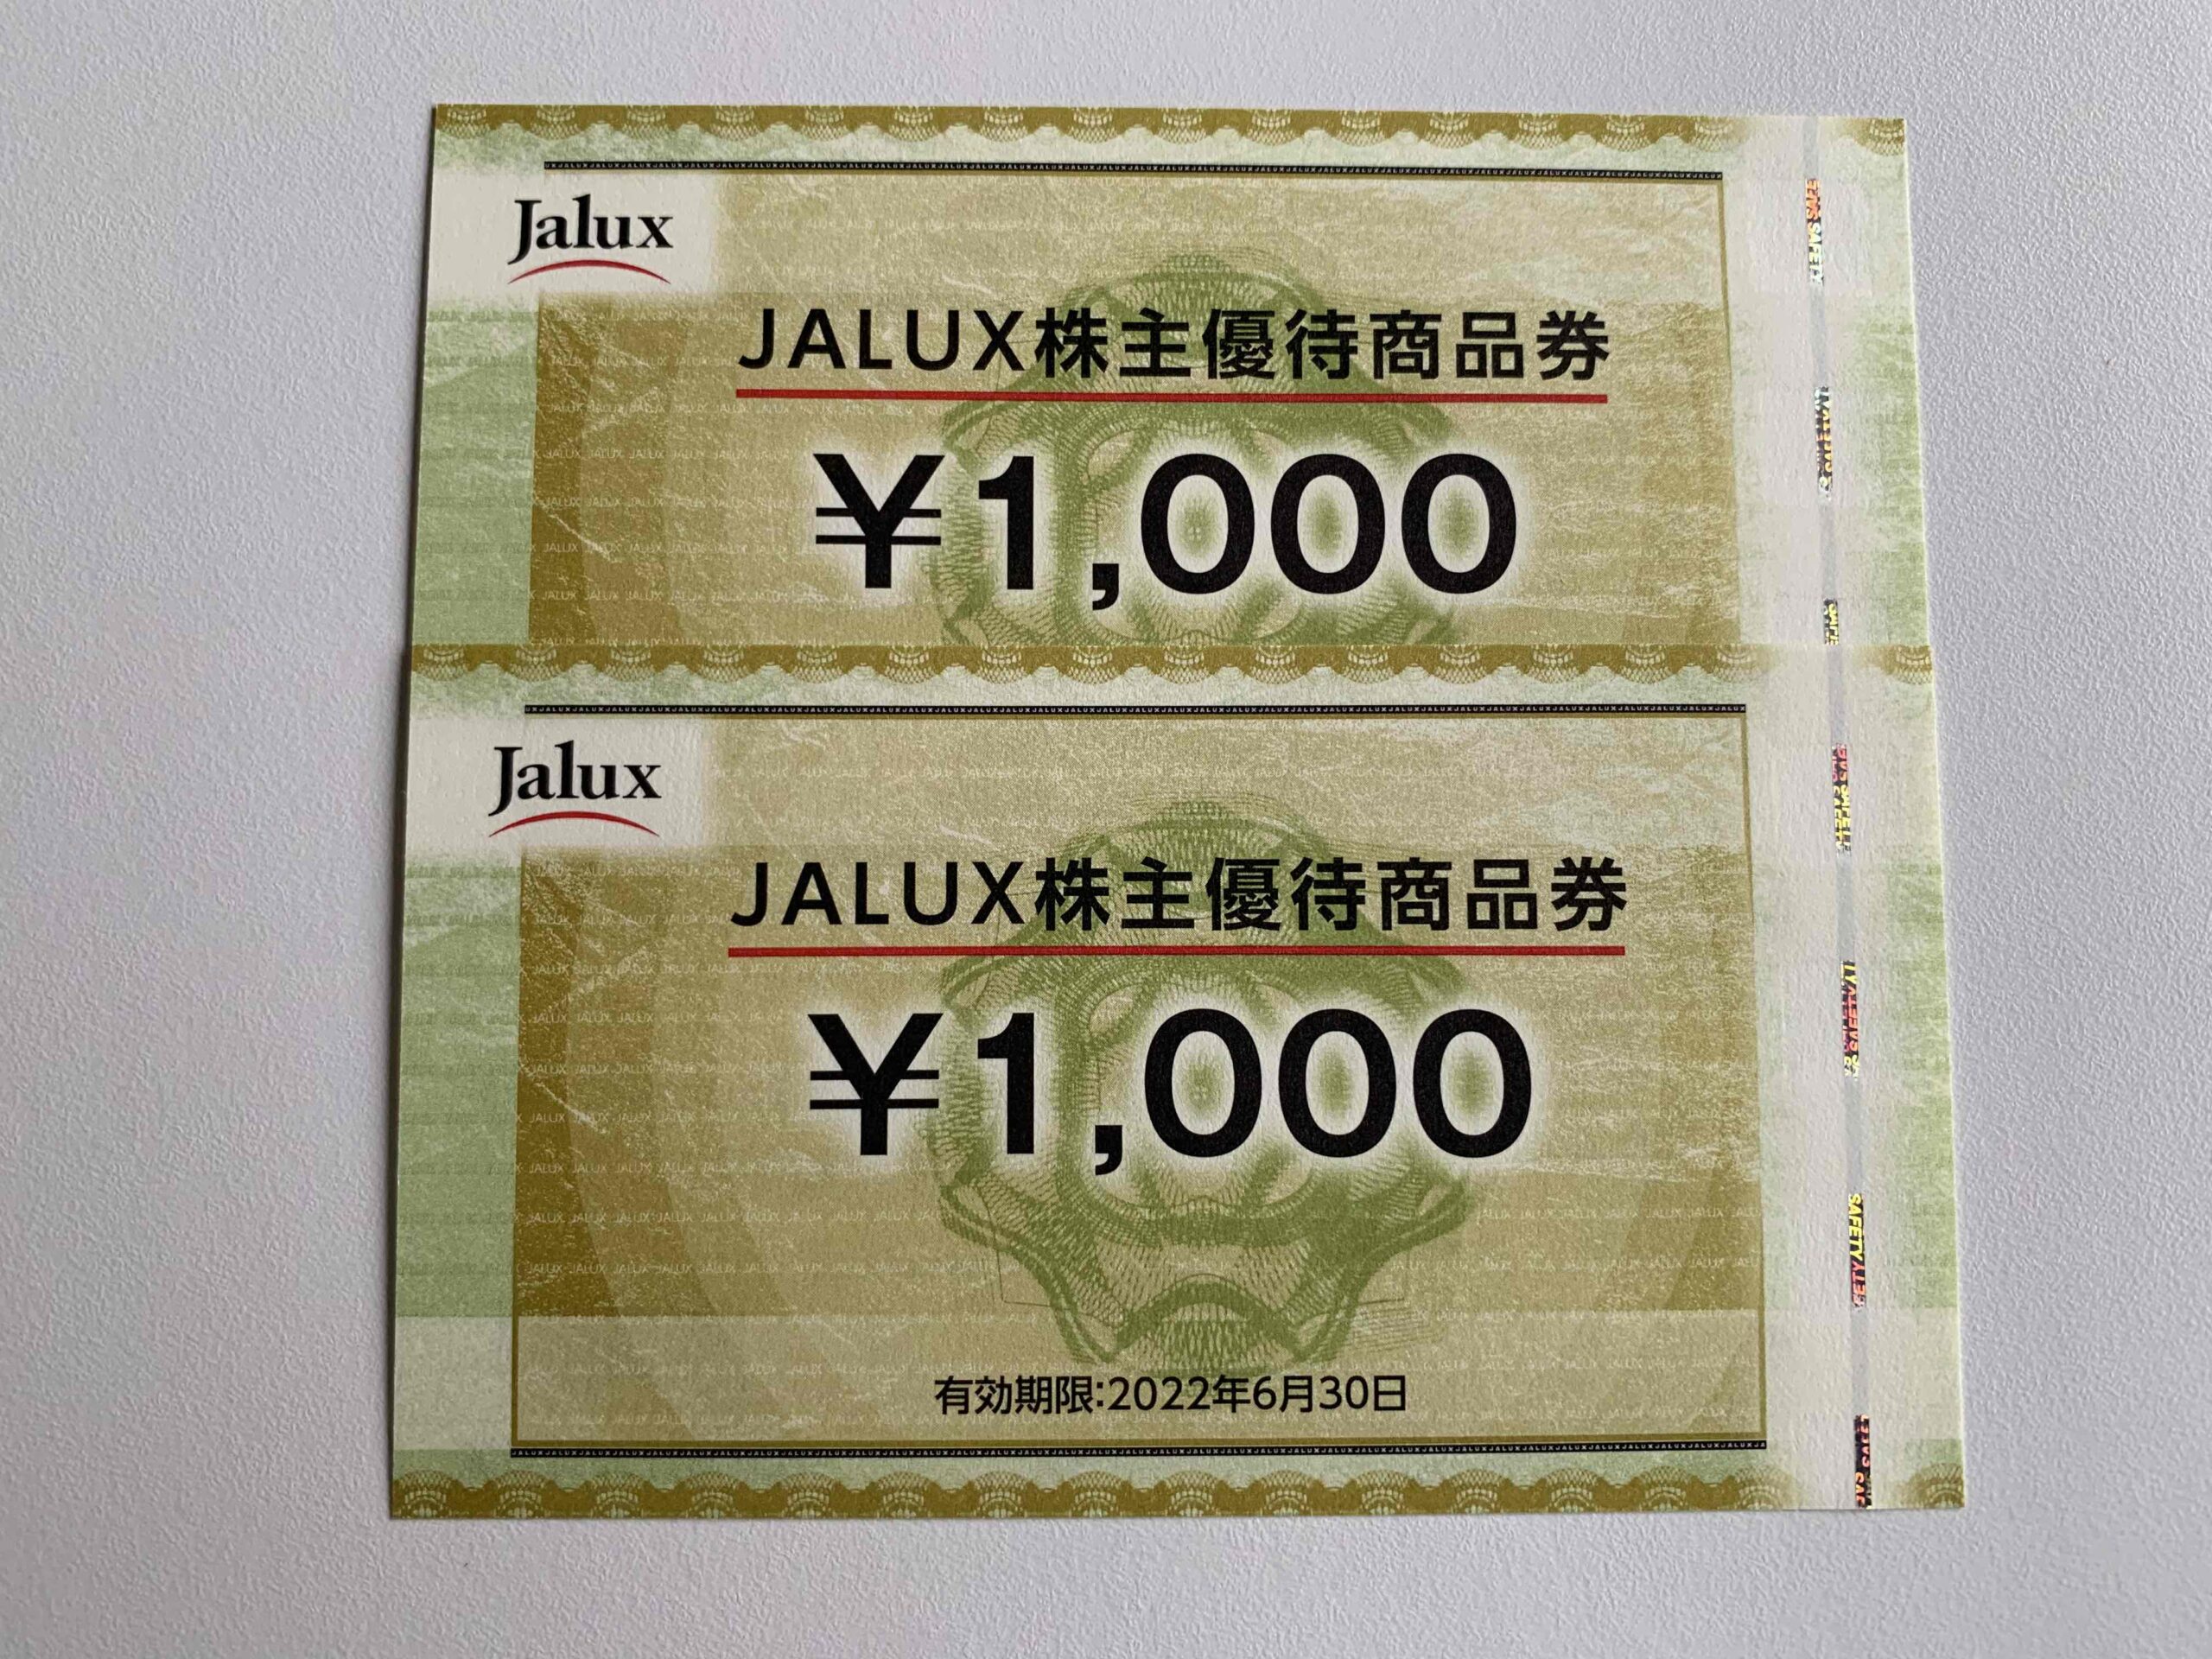 JALUXの株主優待券 数回分を貯めてカタログ商品と交換 | 投資と複業でハーフリタイア生活